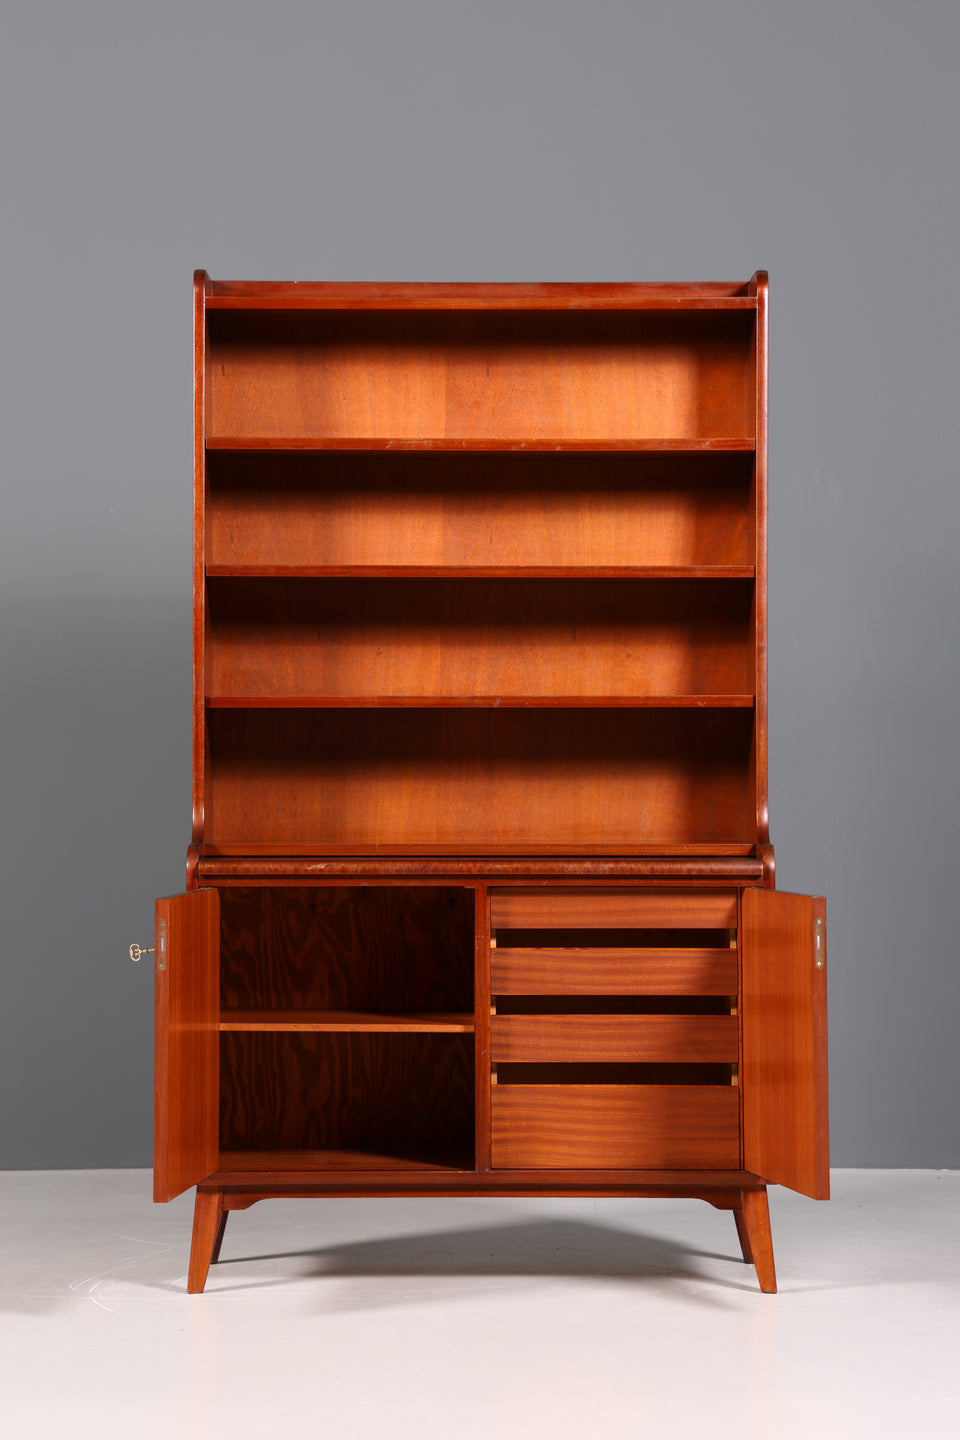 Wunderschöner Mid Century Schrank Bücherregal Vintage Sekretär Highboard Holz Regal 2 von 2